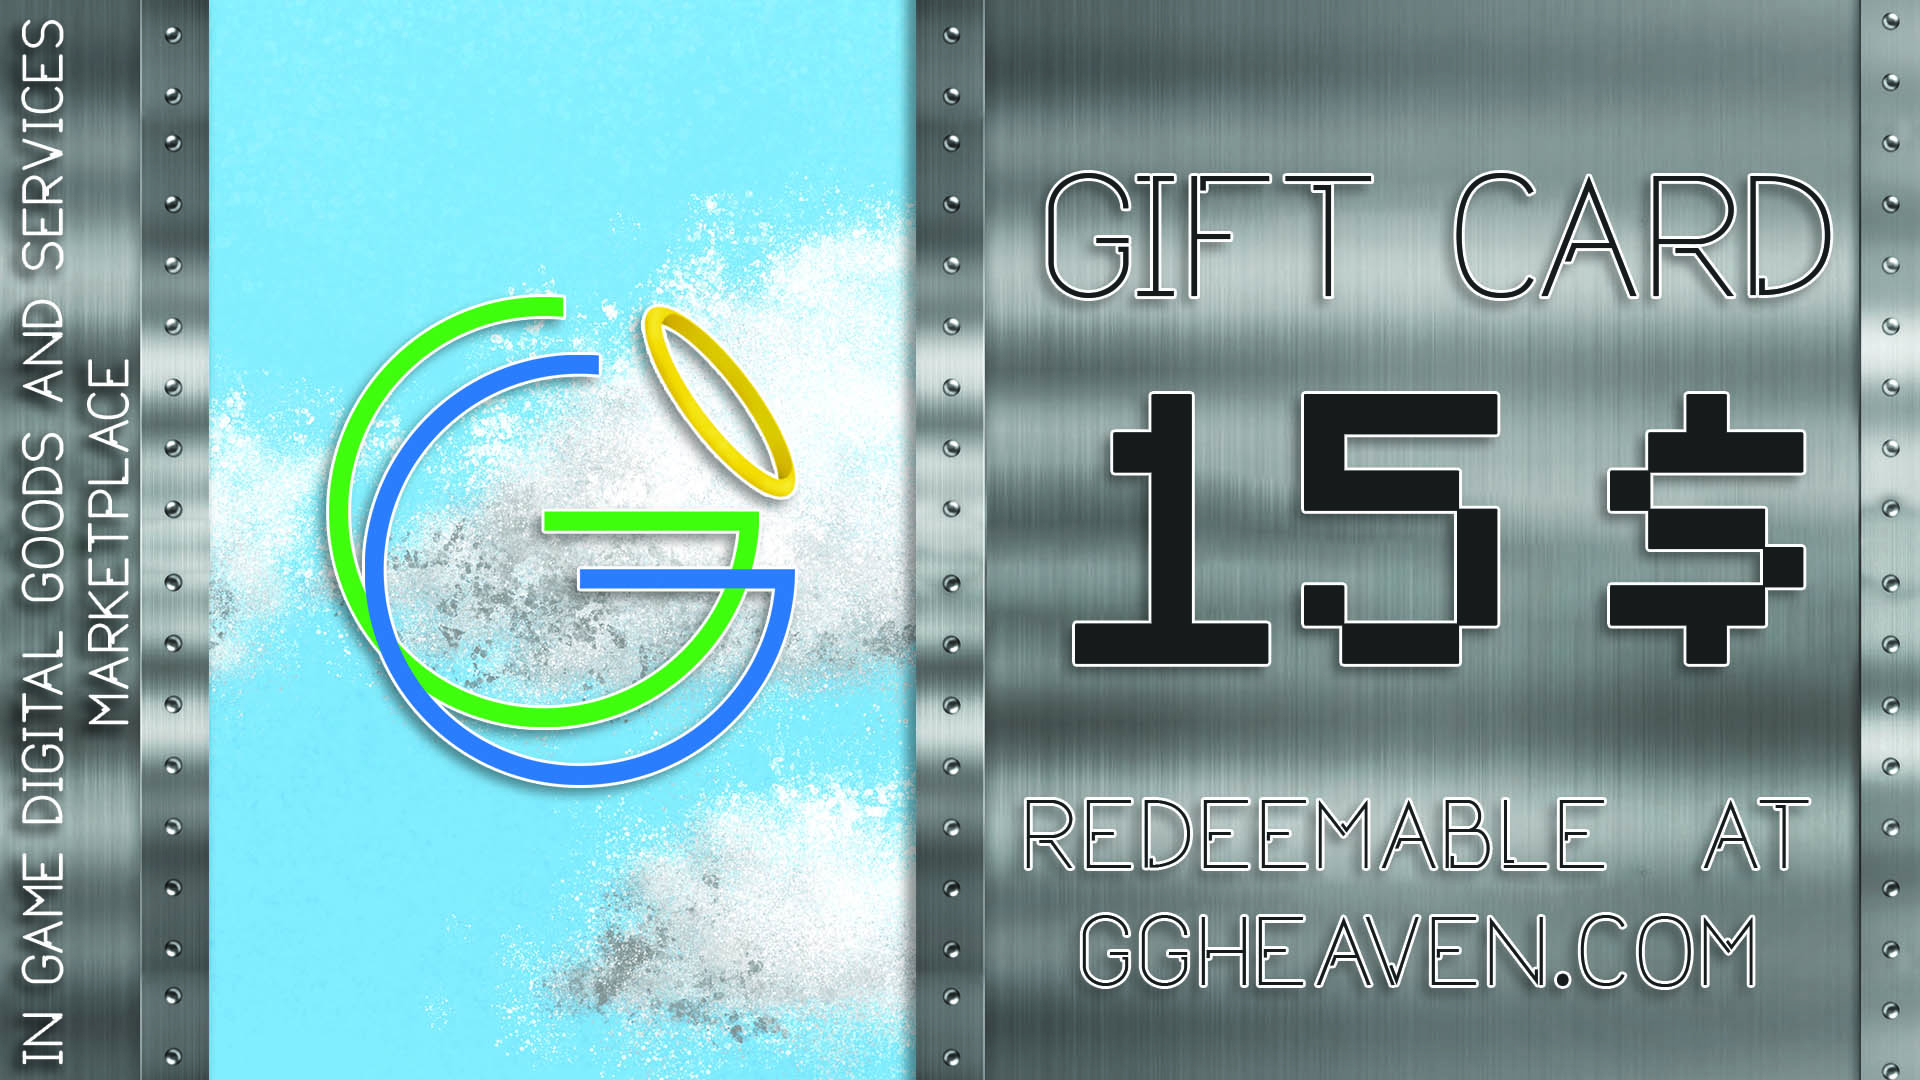 GGHeaven.com 15$ Gift Card